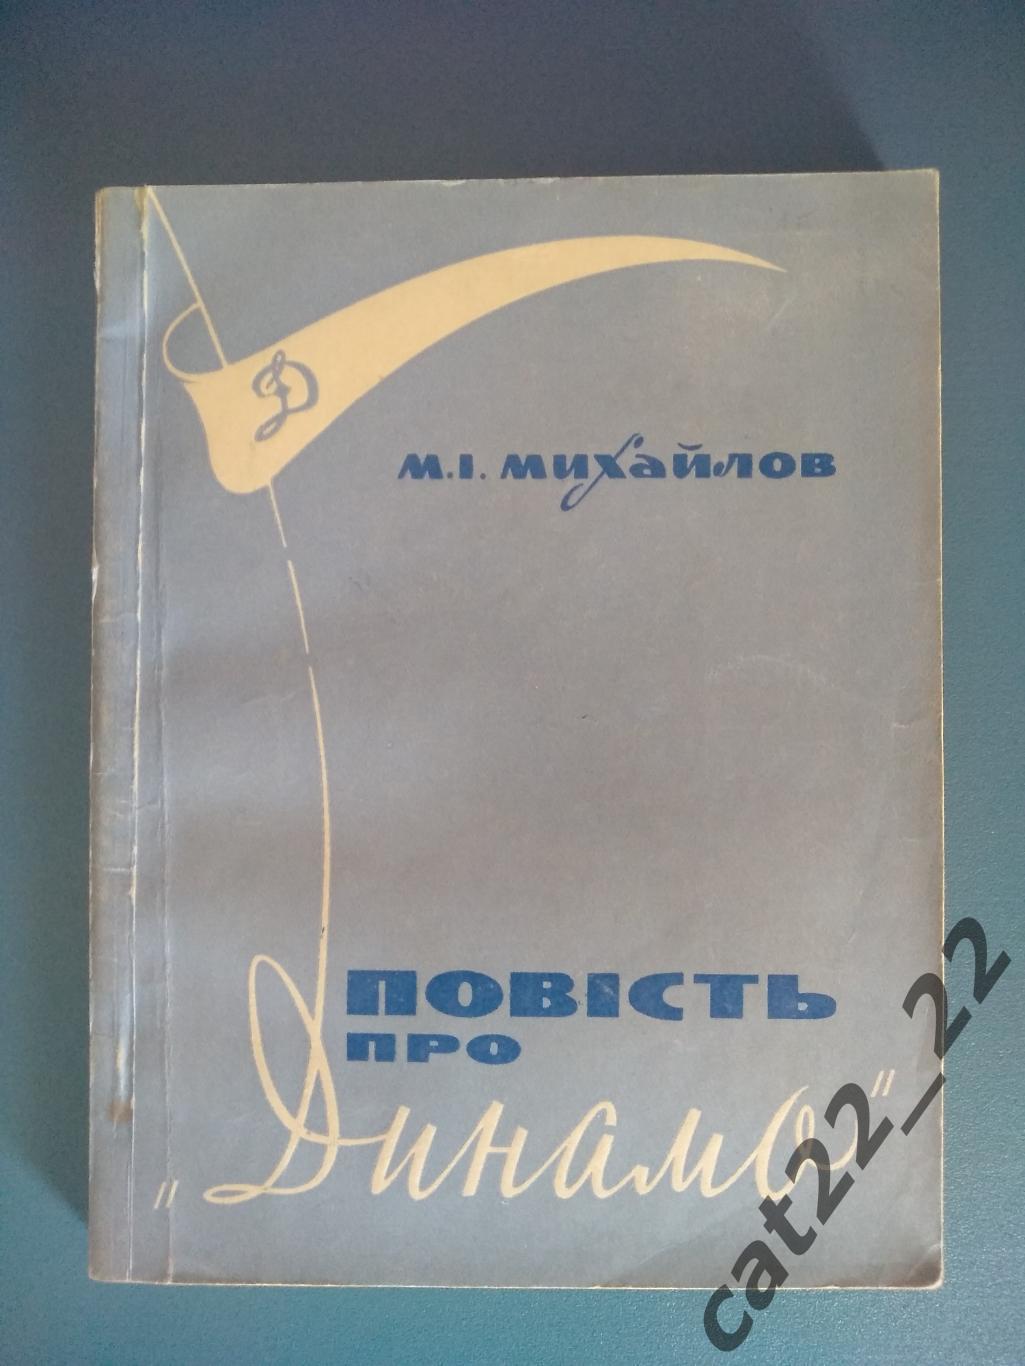 Автографы. Динамо Киев СССР/Украина 1969